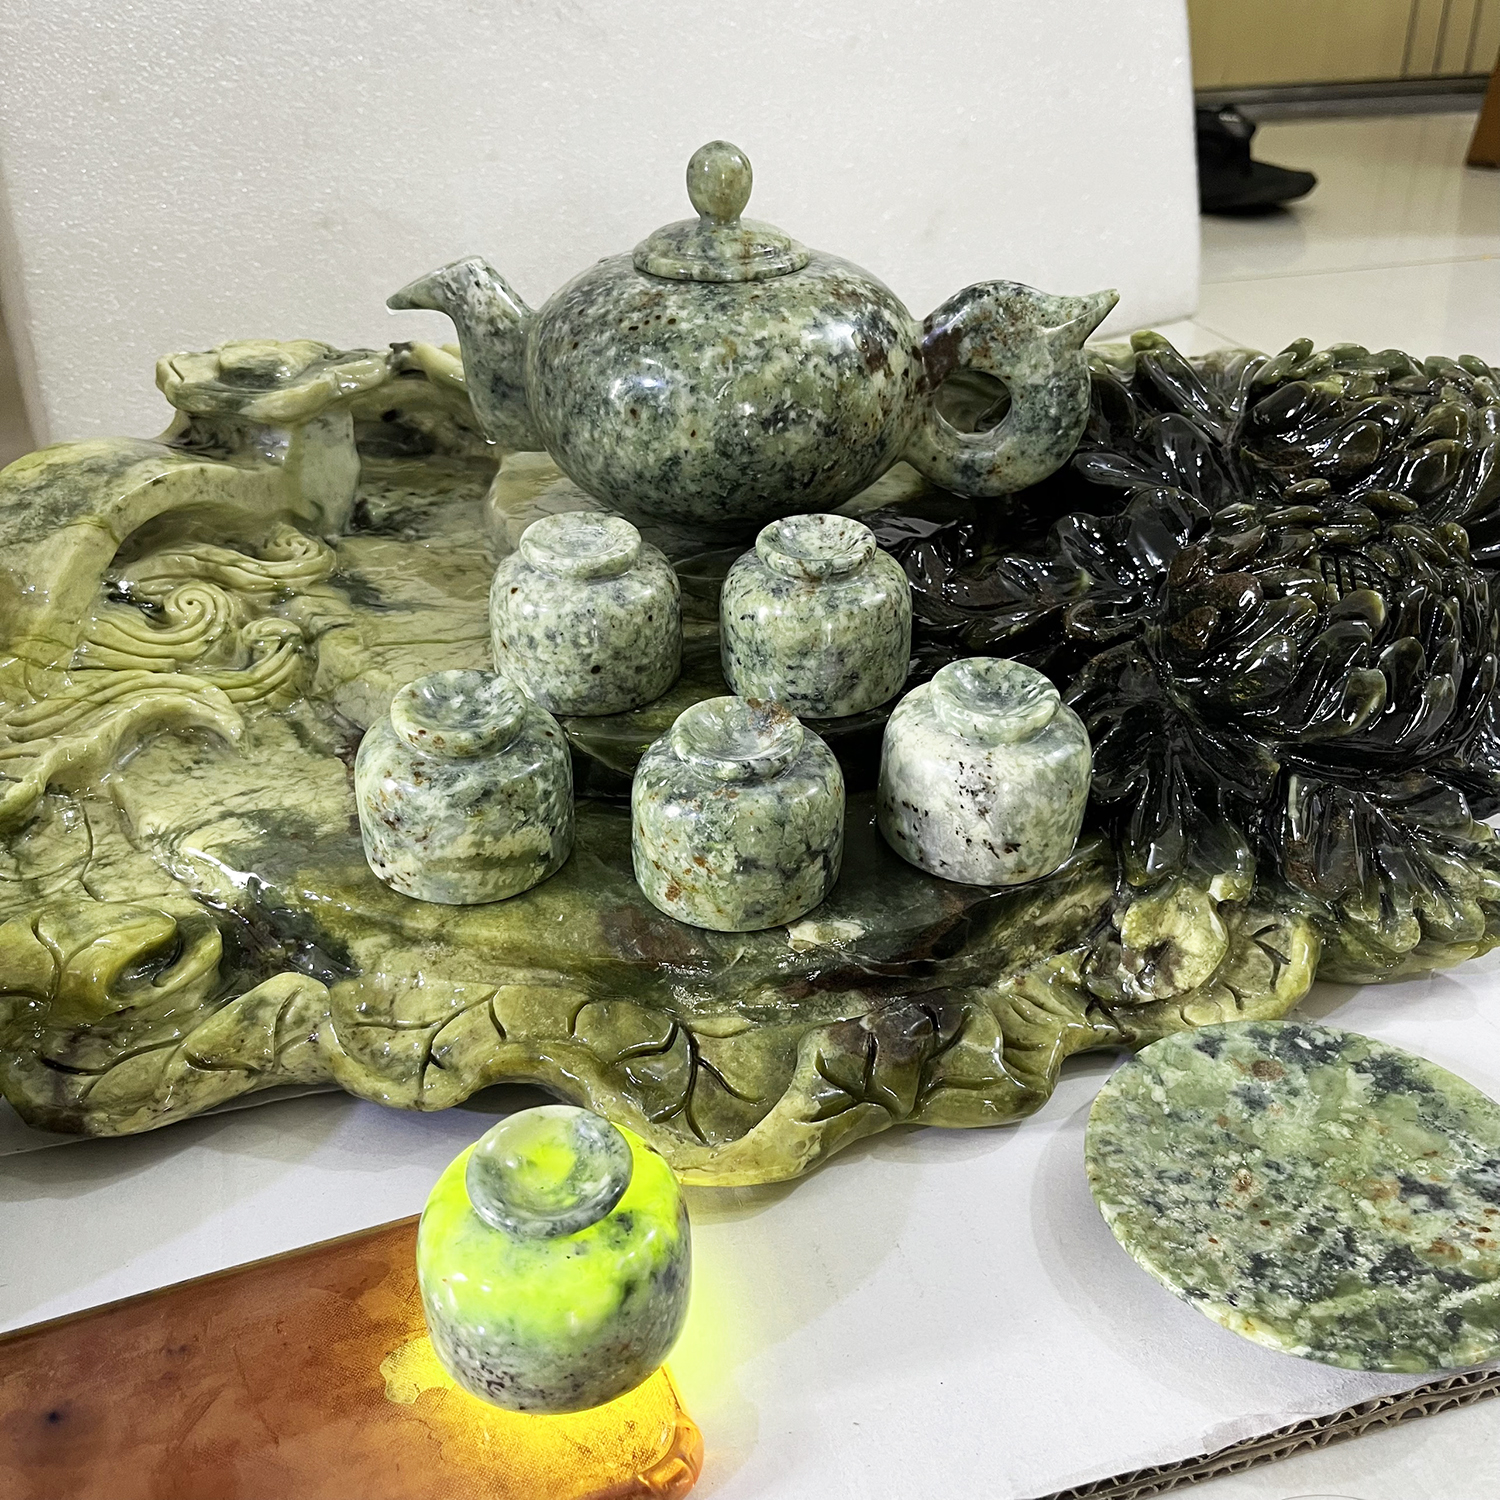 Bộ ấm pha trà, bộ ấm trà ngọc serpentine từ đá ngọc tự nhiên đục và tạc tạo thành khay HOA CÚC rộng 60cm cao 20 nặng 39 kg đá tự nhiên